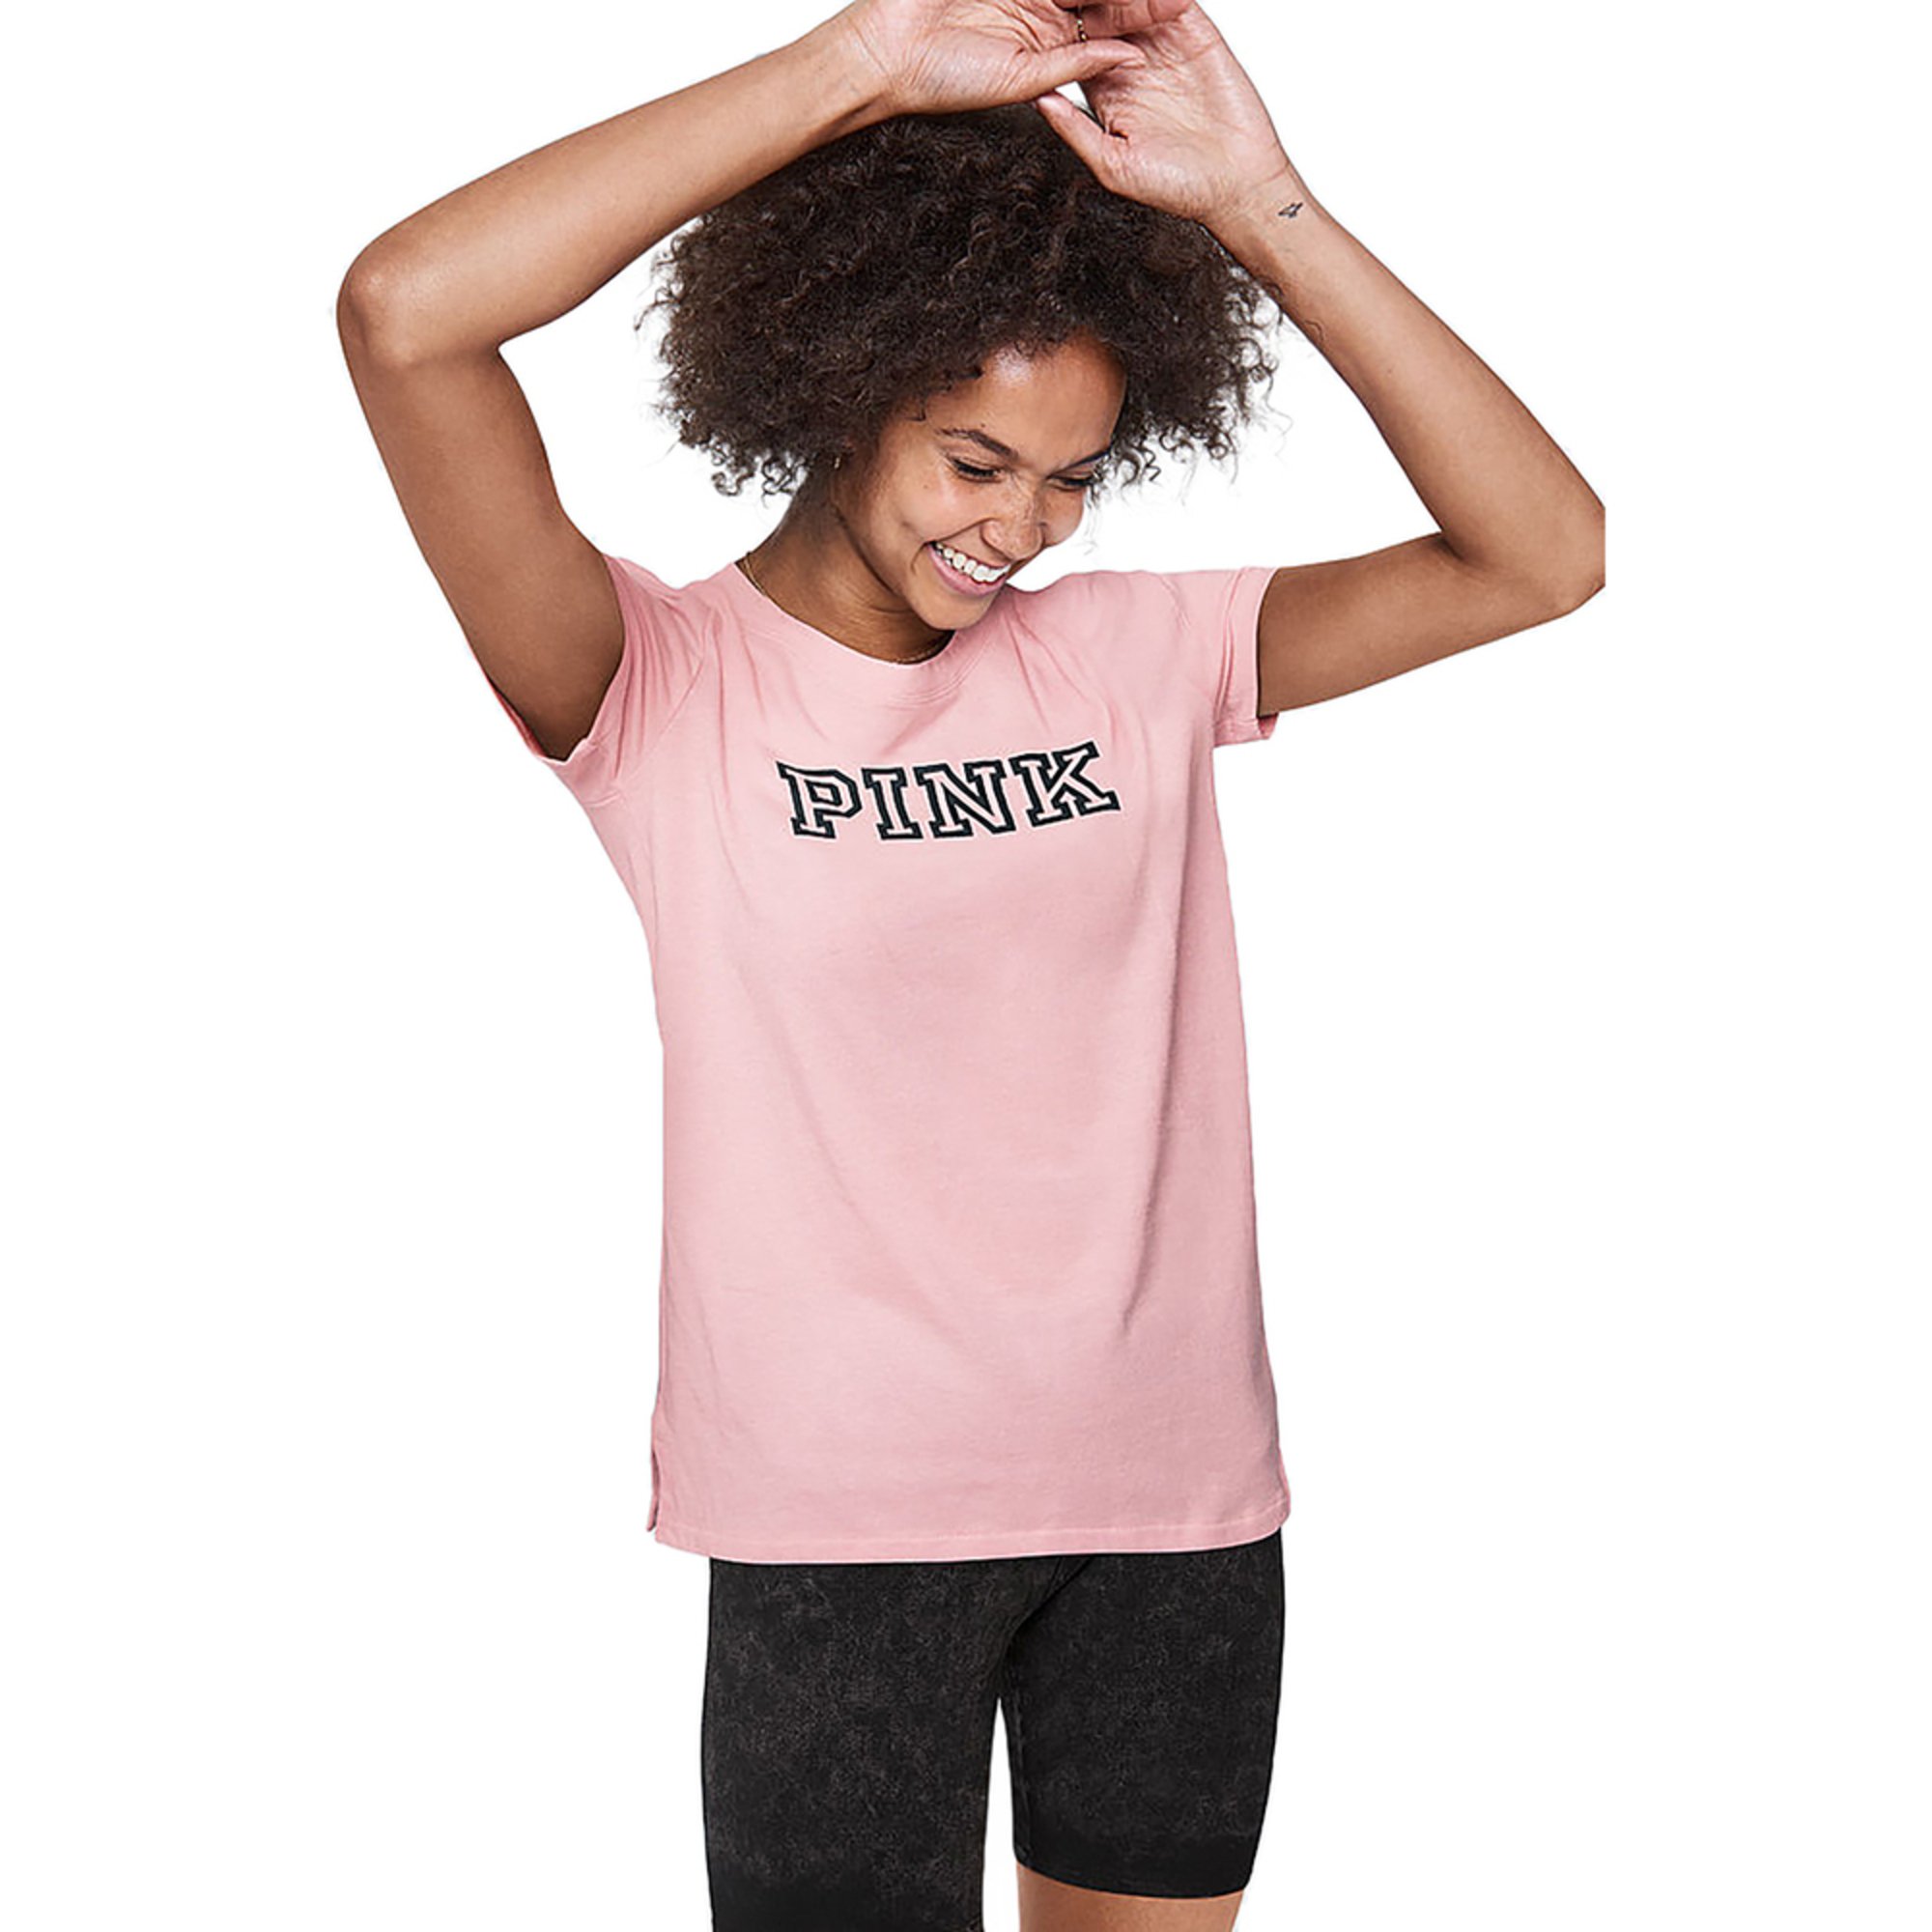 victoria secret pink plus size shirts